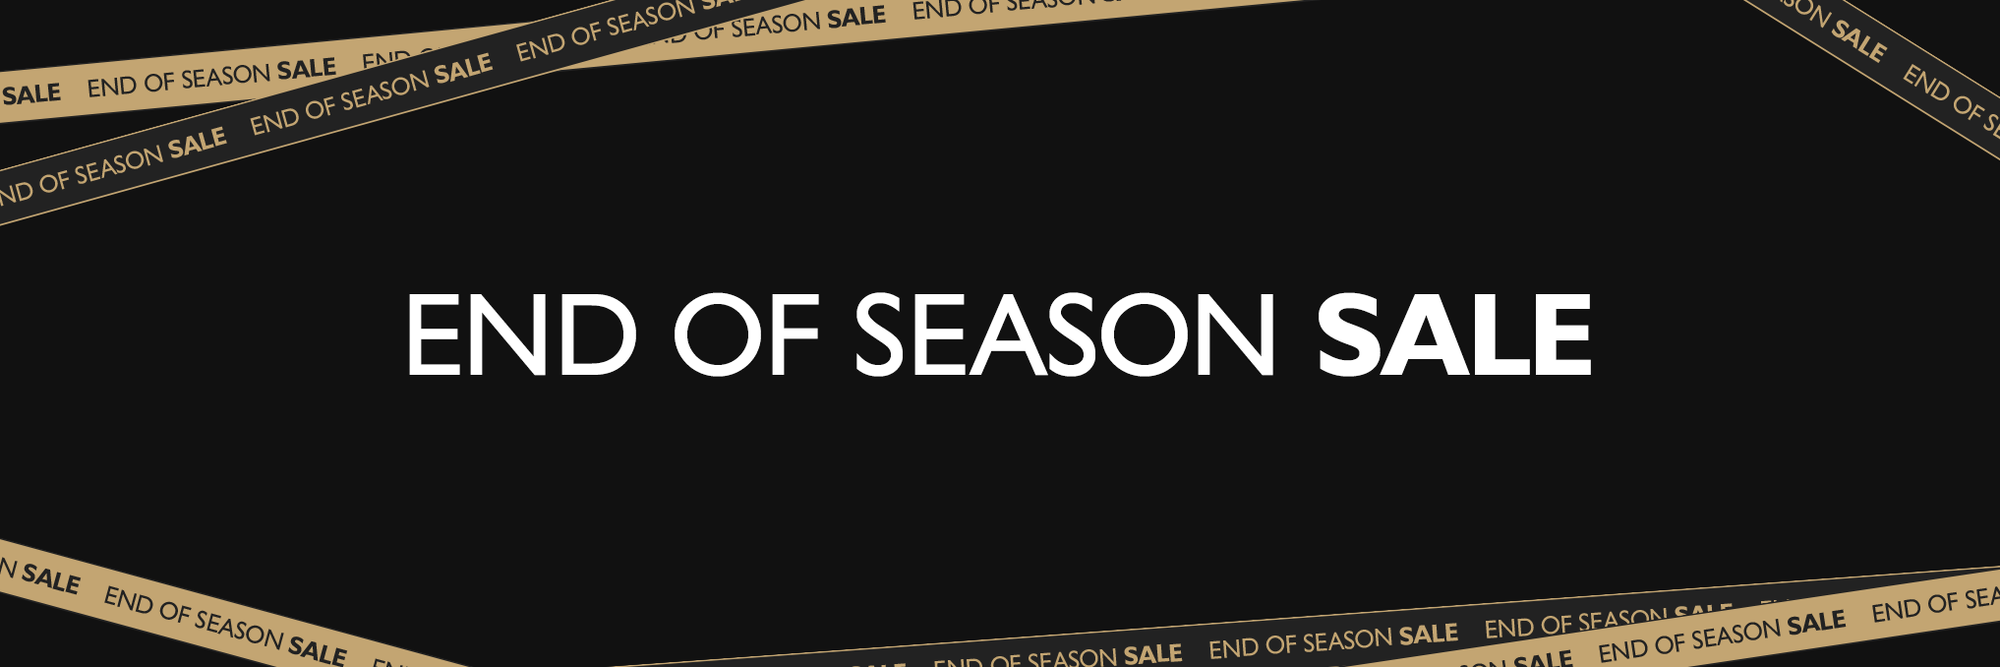 23/24 End of Season Sale